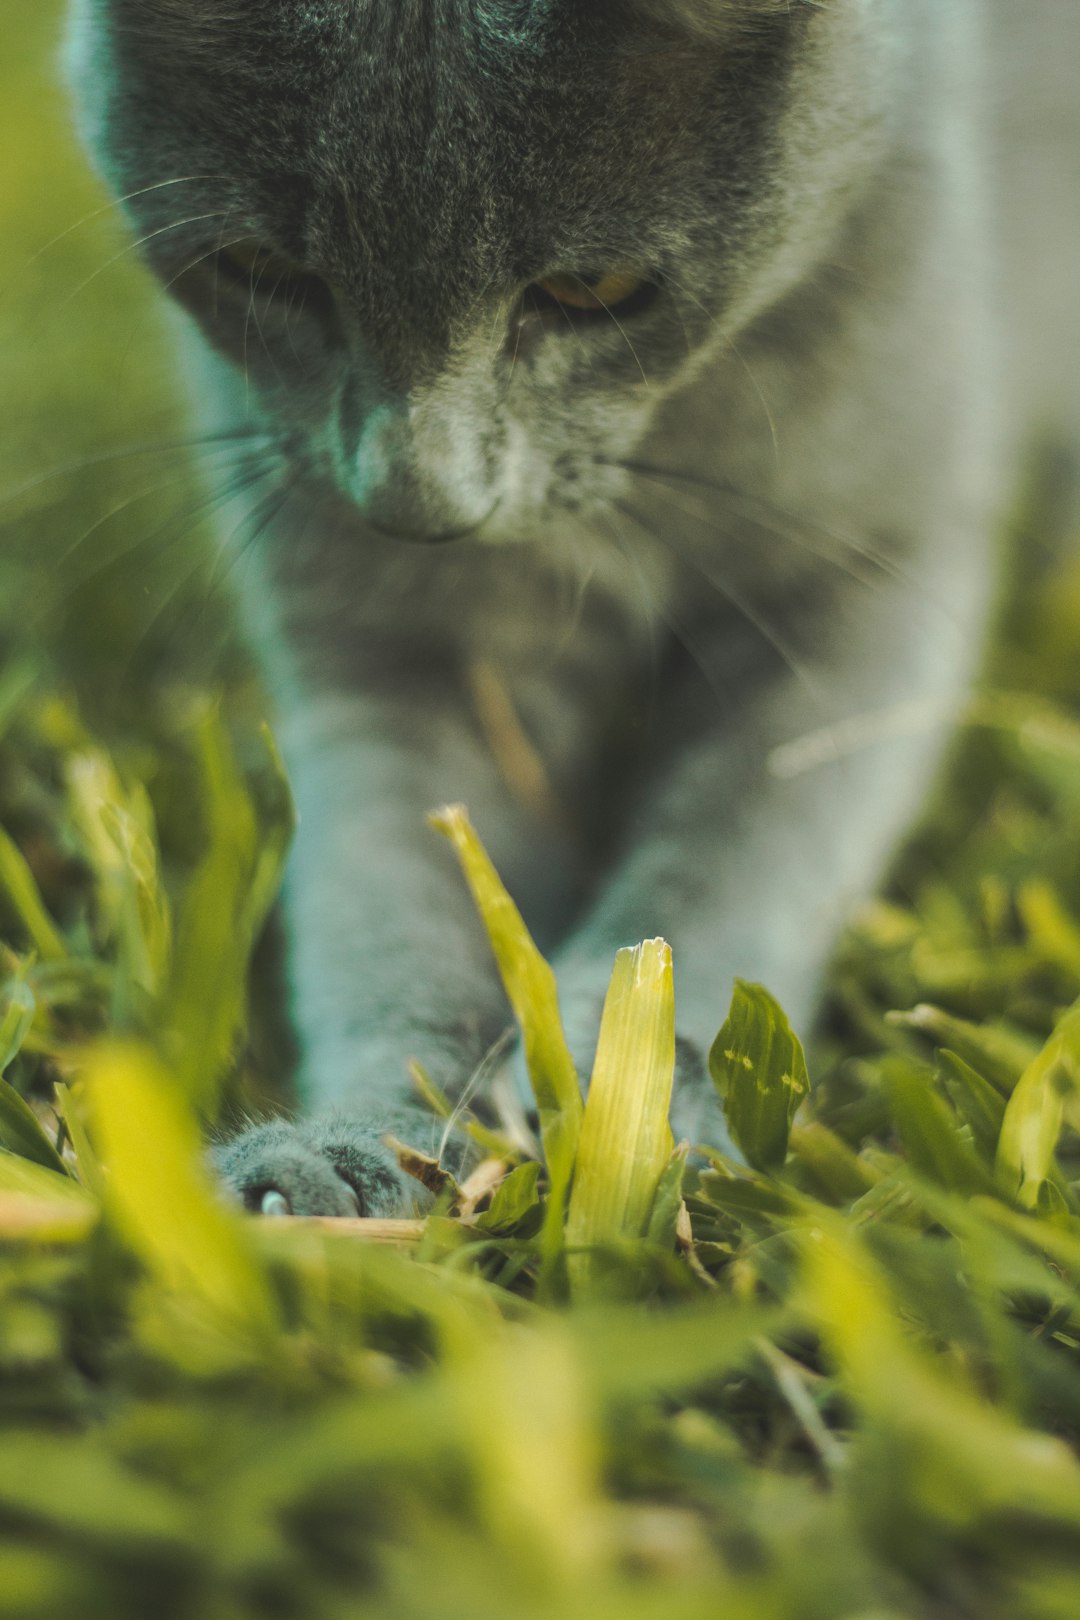 russian blue cat on green grass